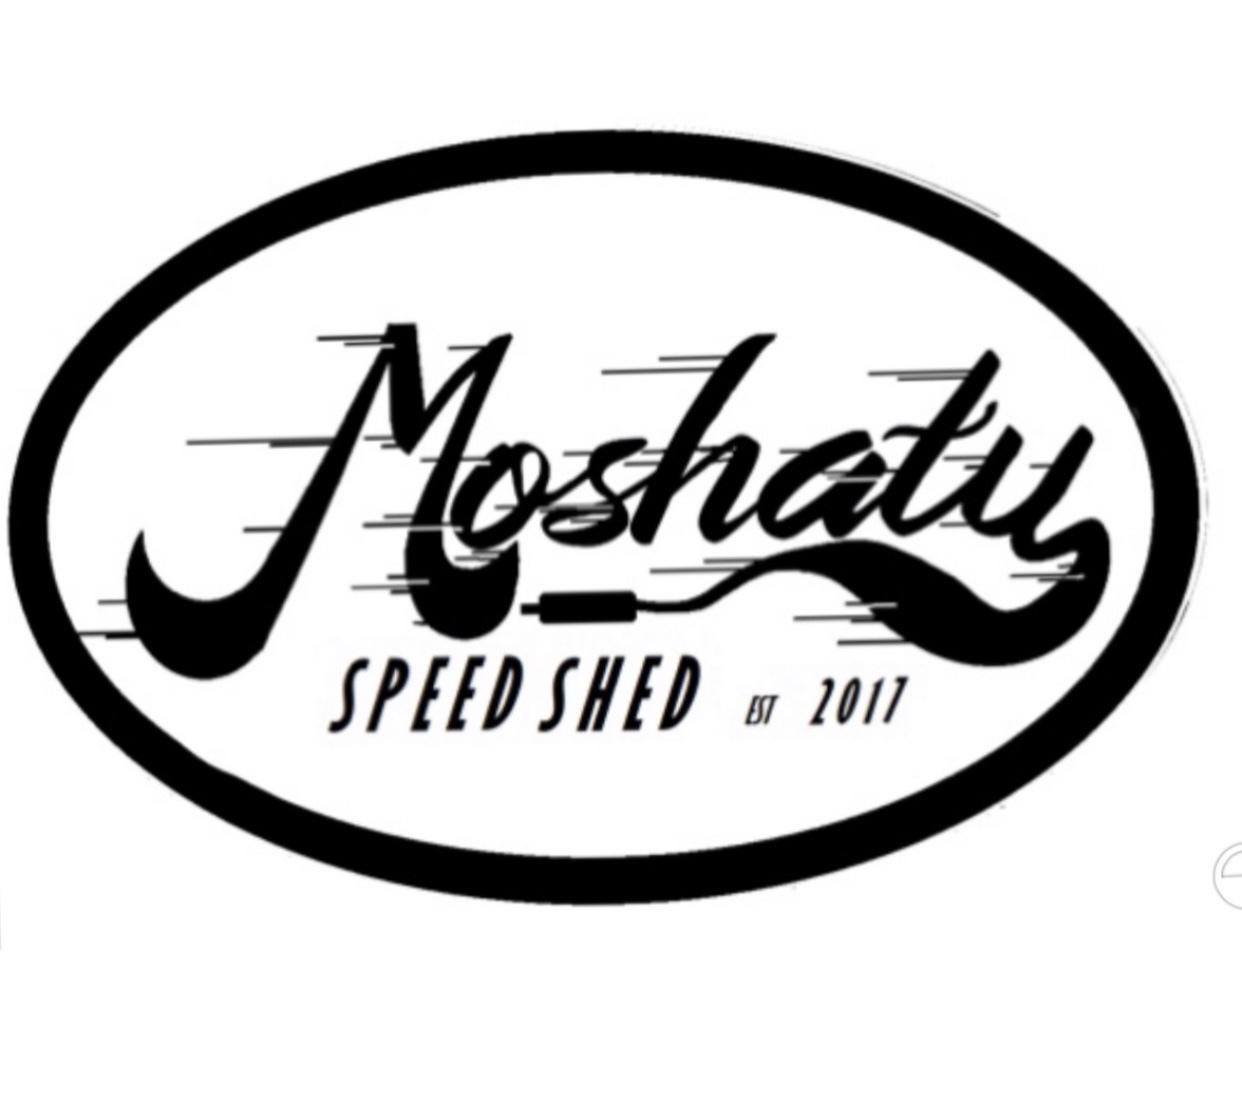 Moshaty